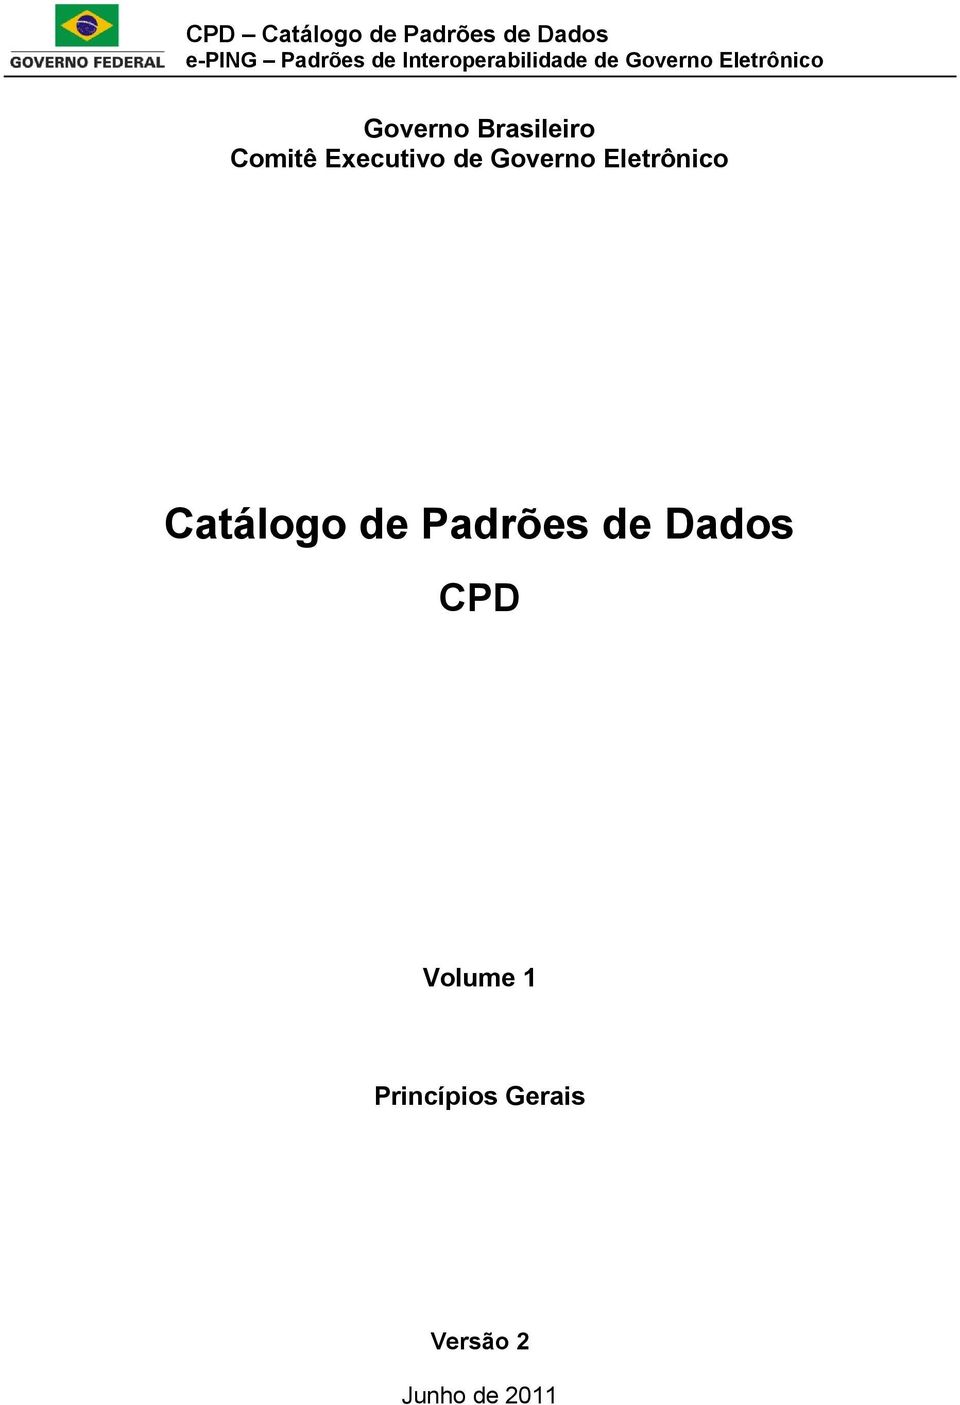 Catálogo de Padrões de Dados CPD